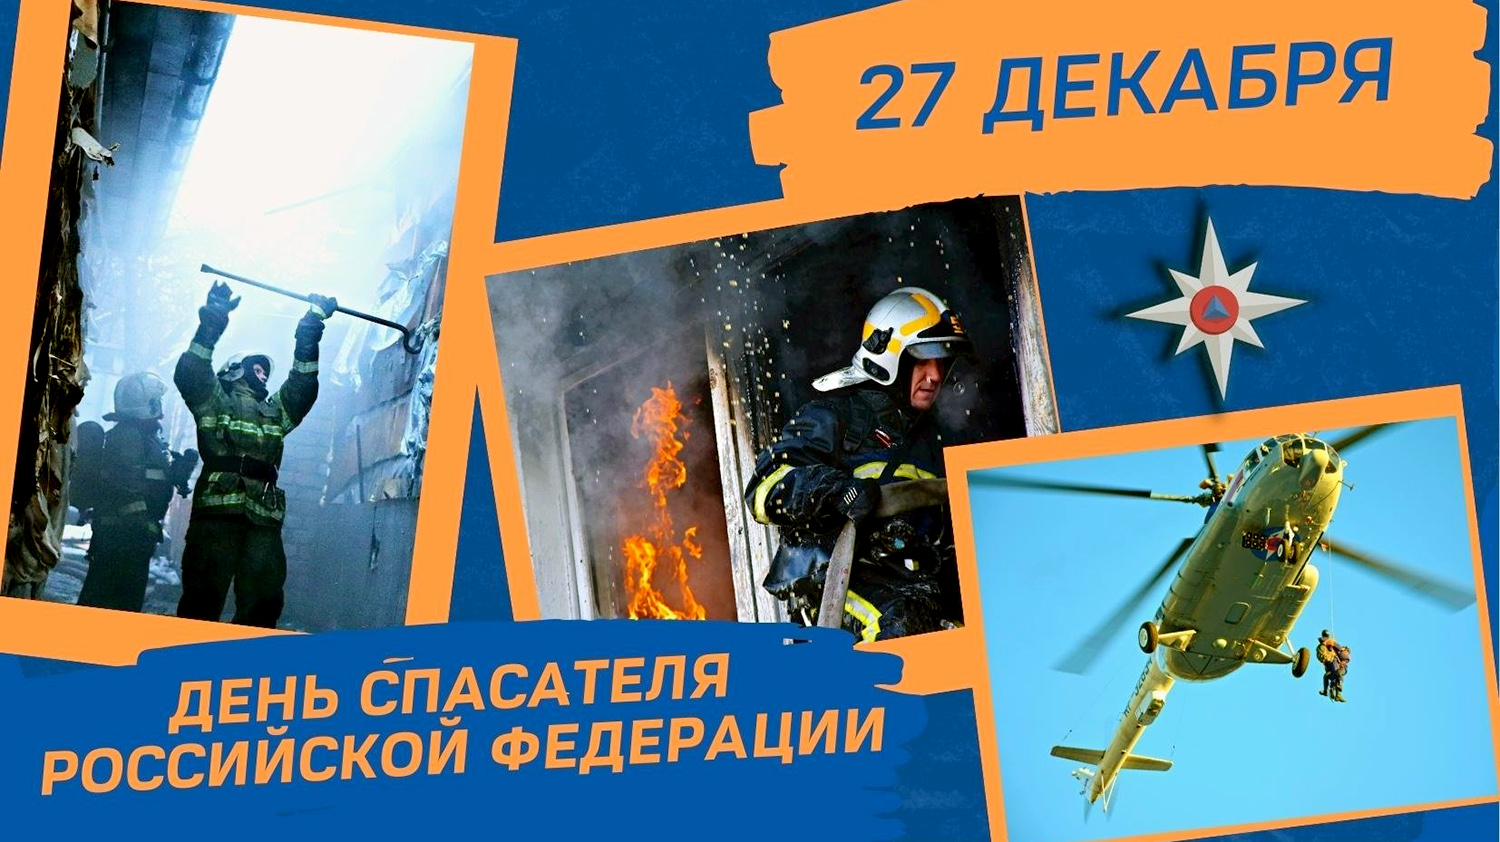 Сегодня в России - День спасателя